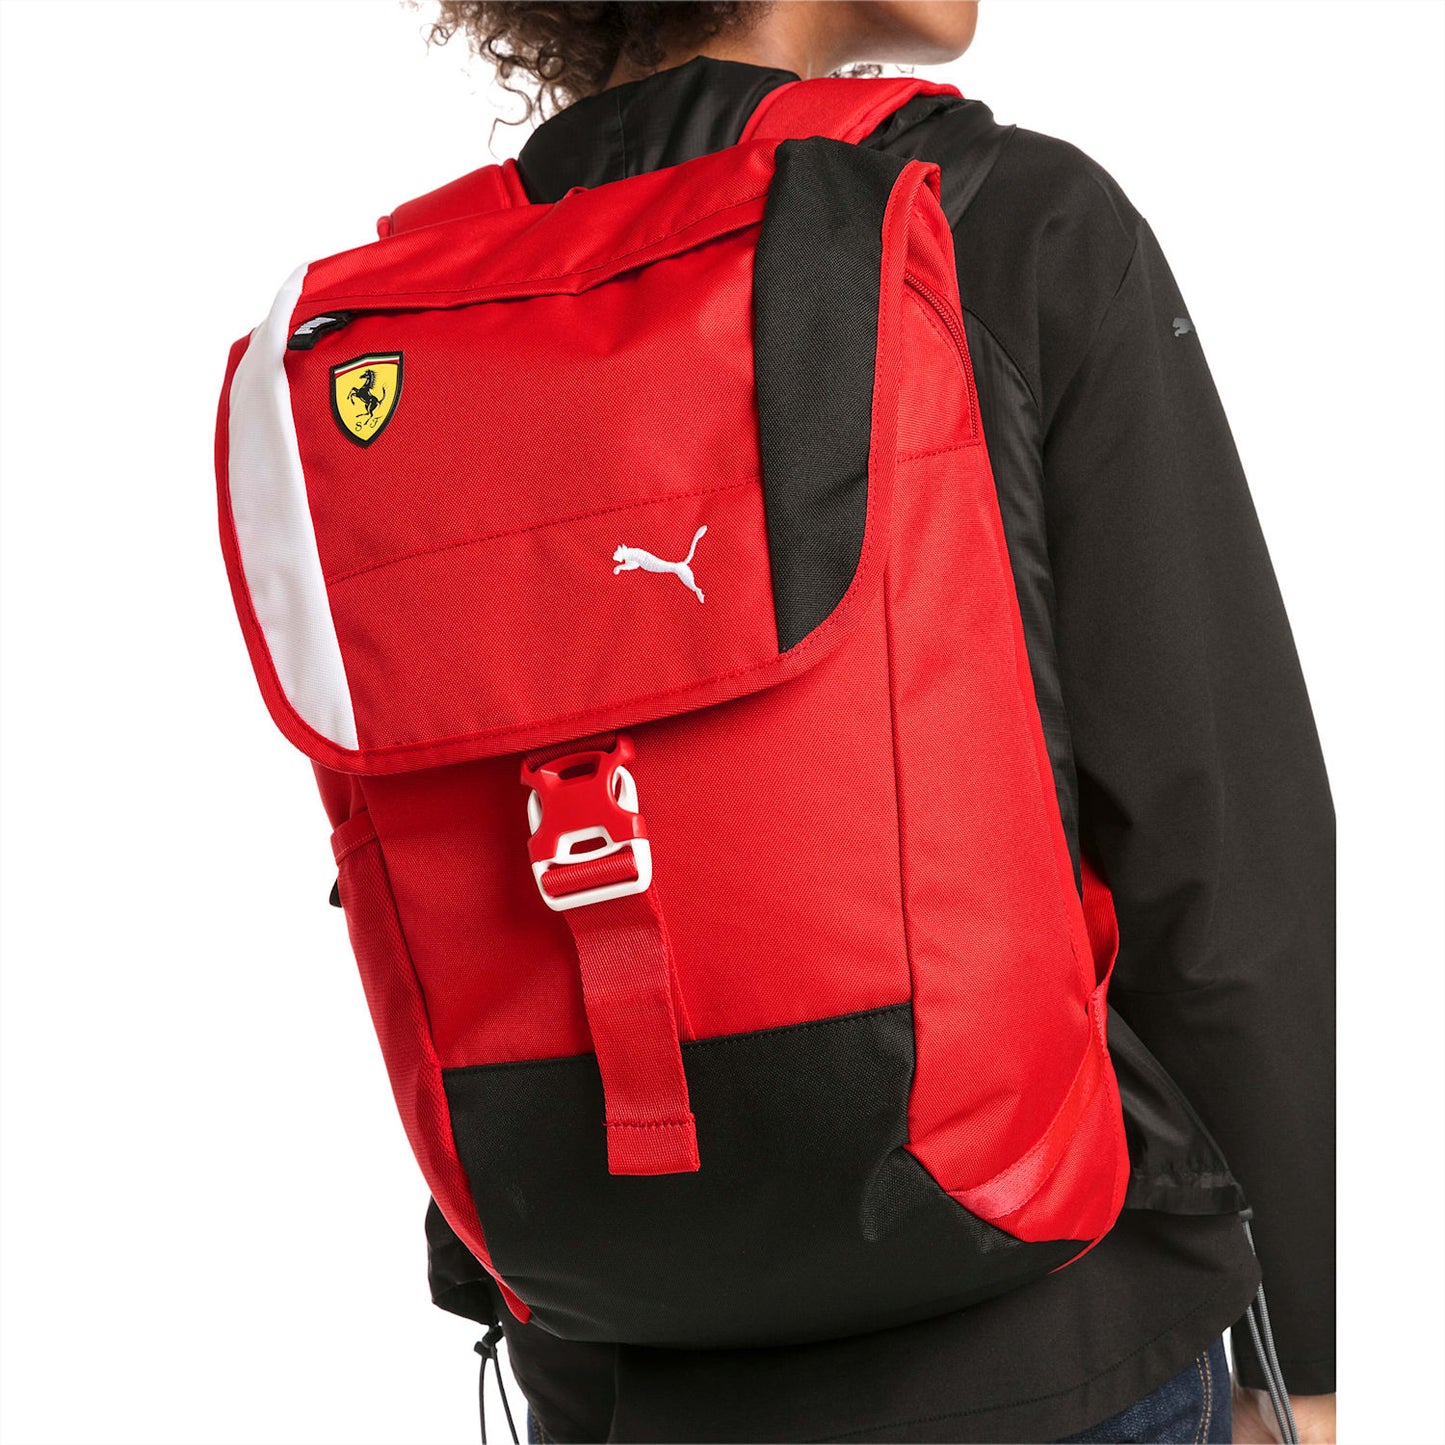 Scuderia Ferrari backpack for fans-075774 01